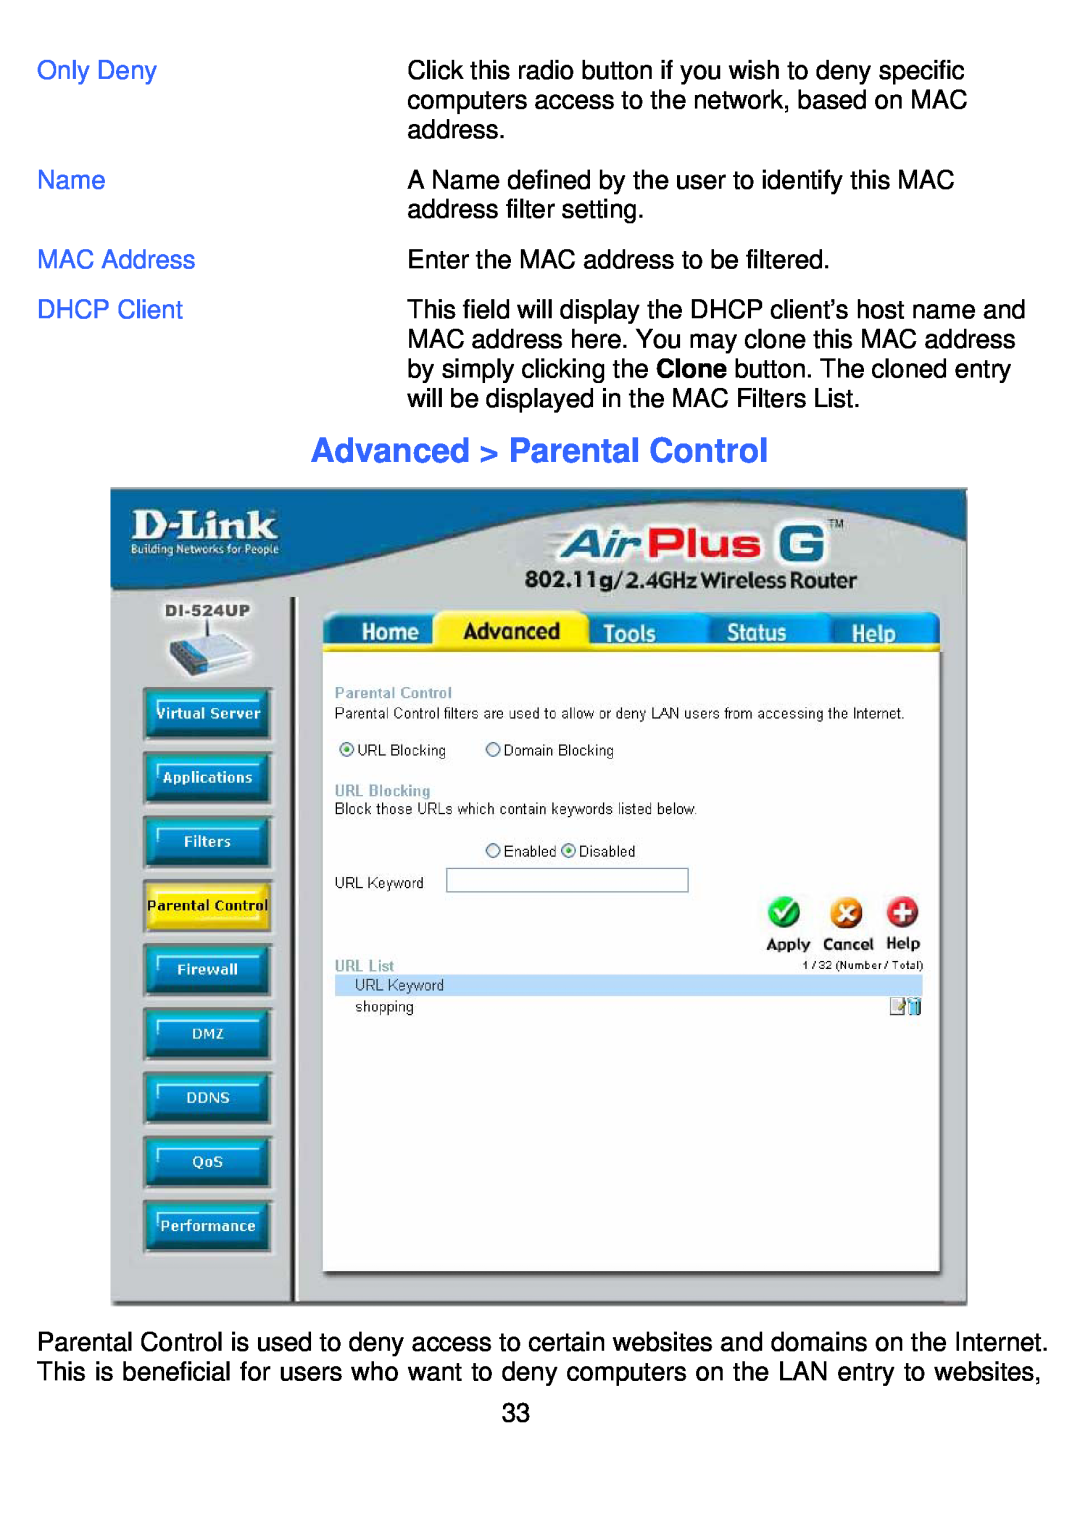 D-Link DI-524UP manual Advanced Parental Control 